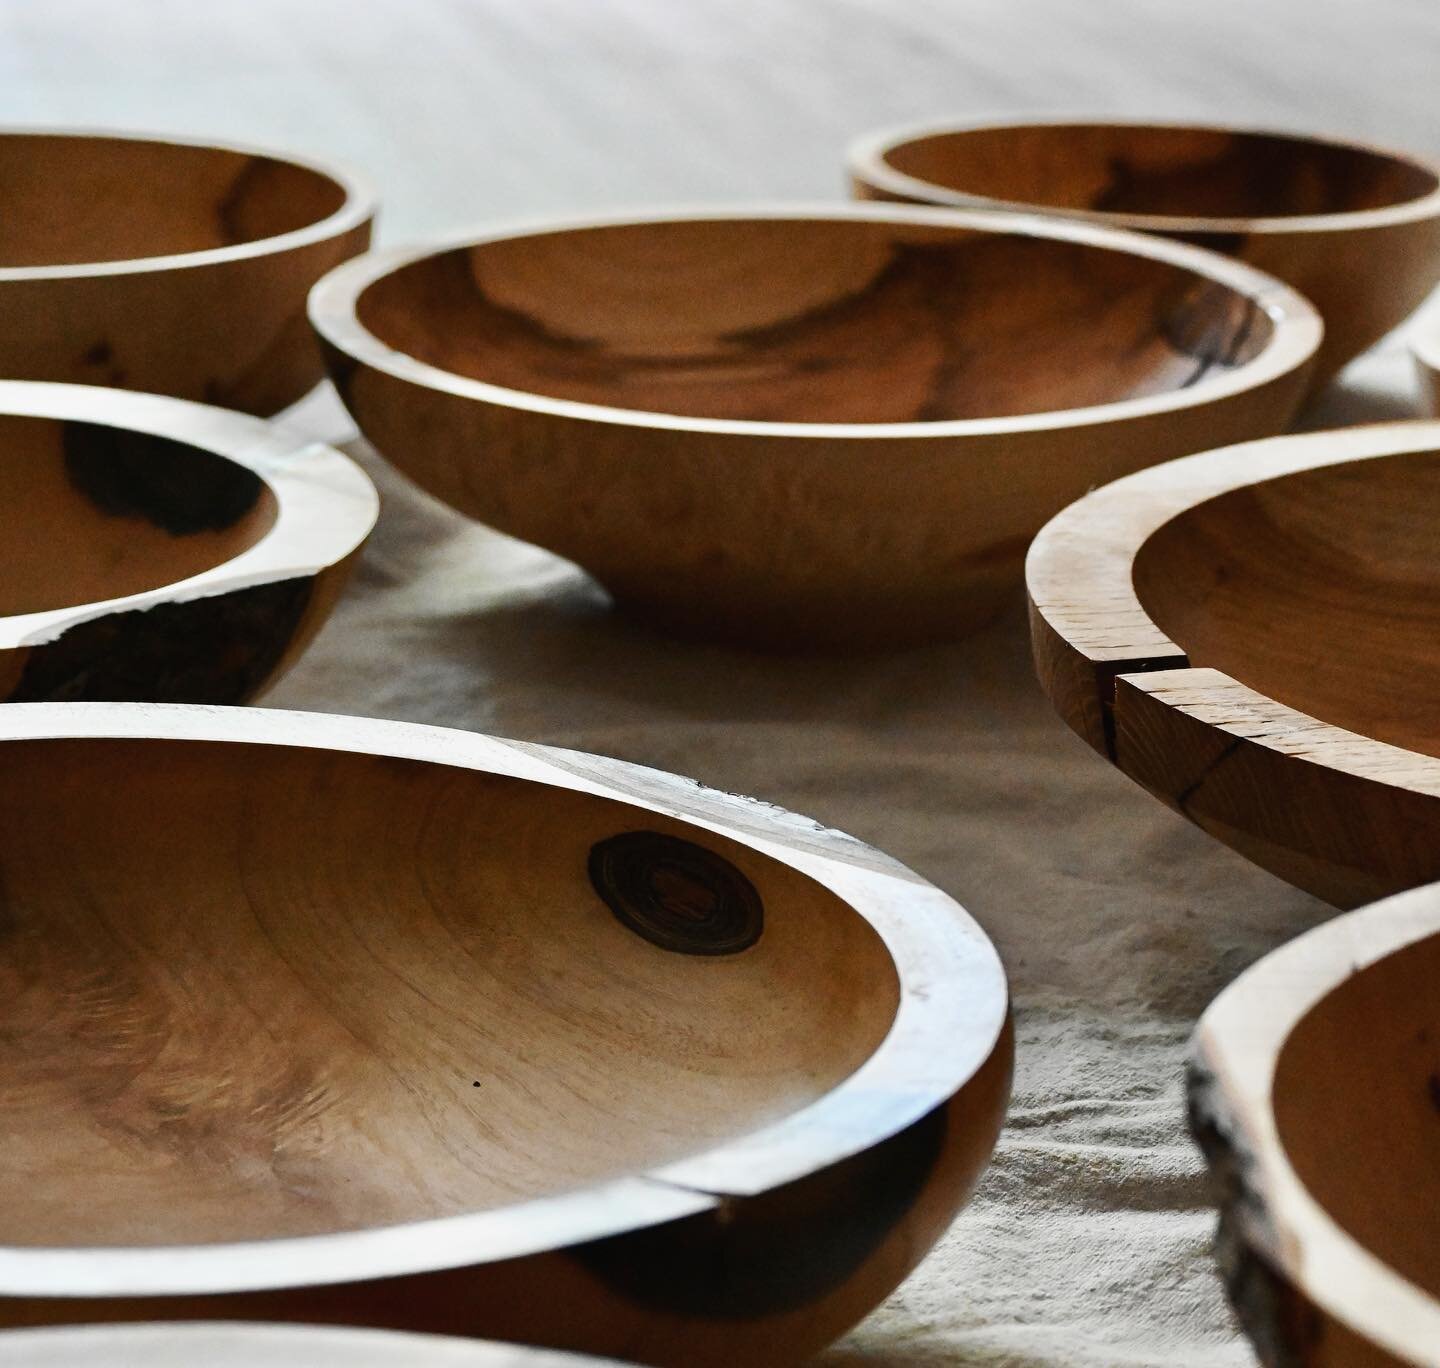 Bowls or Vases? 

I&rsquo;ll have both this weekend 
@utahartsfest June 23-25 

#woodturning #naturalhomedecor #lathework #sustainabledecor #handmadebowls #woodenvase